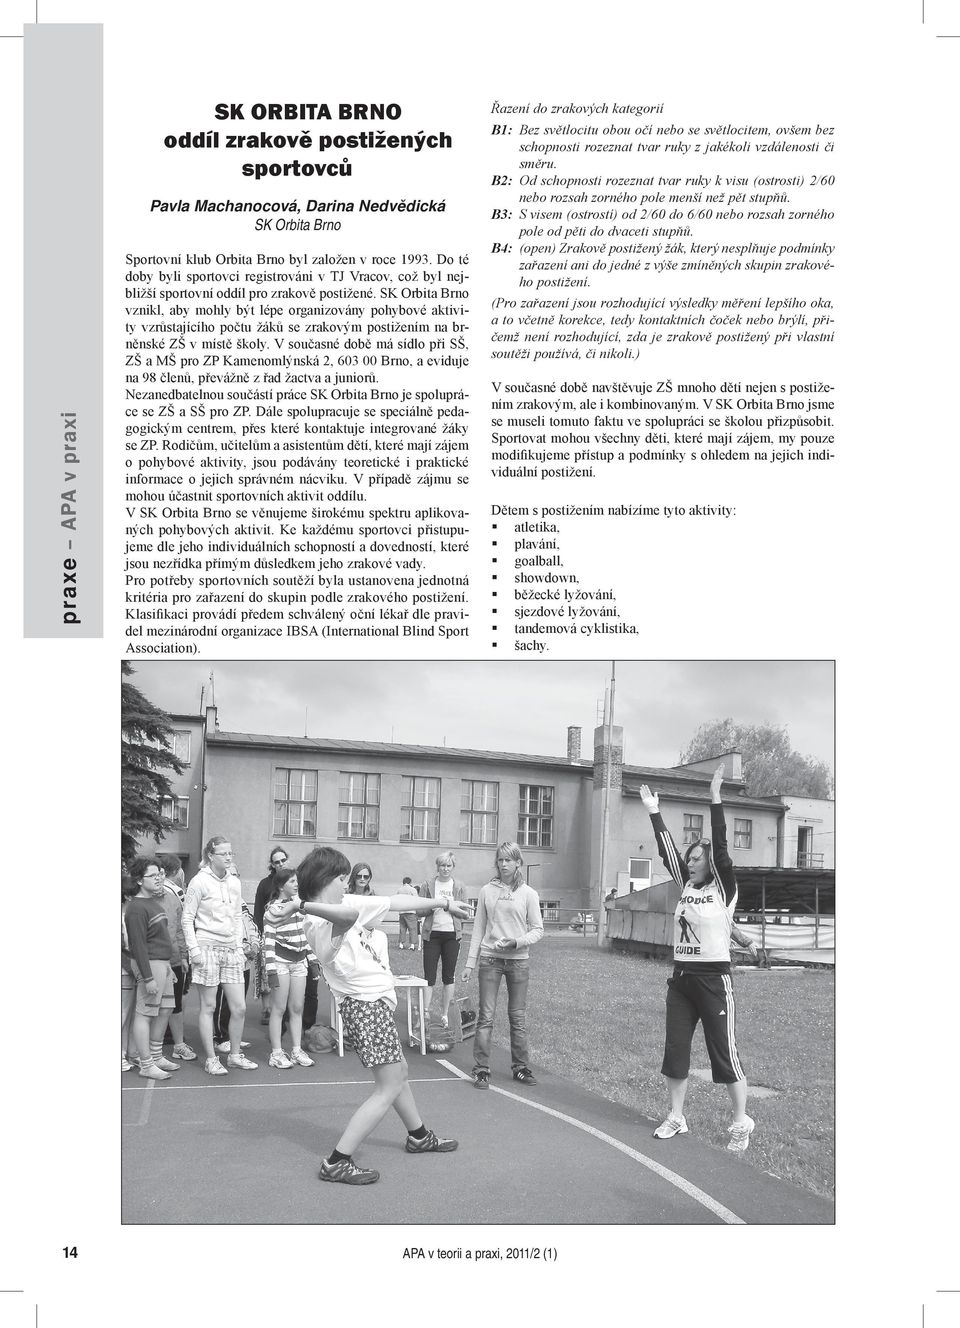 SK Orbita Brno vznikl, aby mohly být lépe organizovány pohybové aktivity vzrůstajícího počtu žáků se zrakovým postižením na brněnské ZŠ v místě školy.